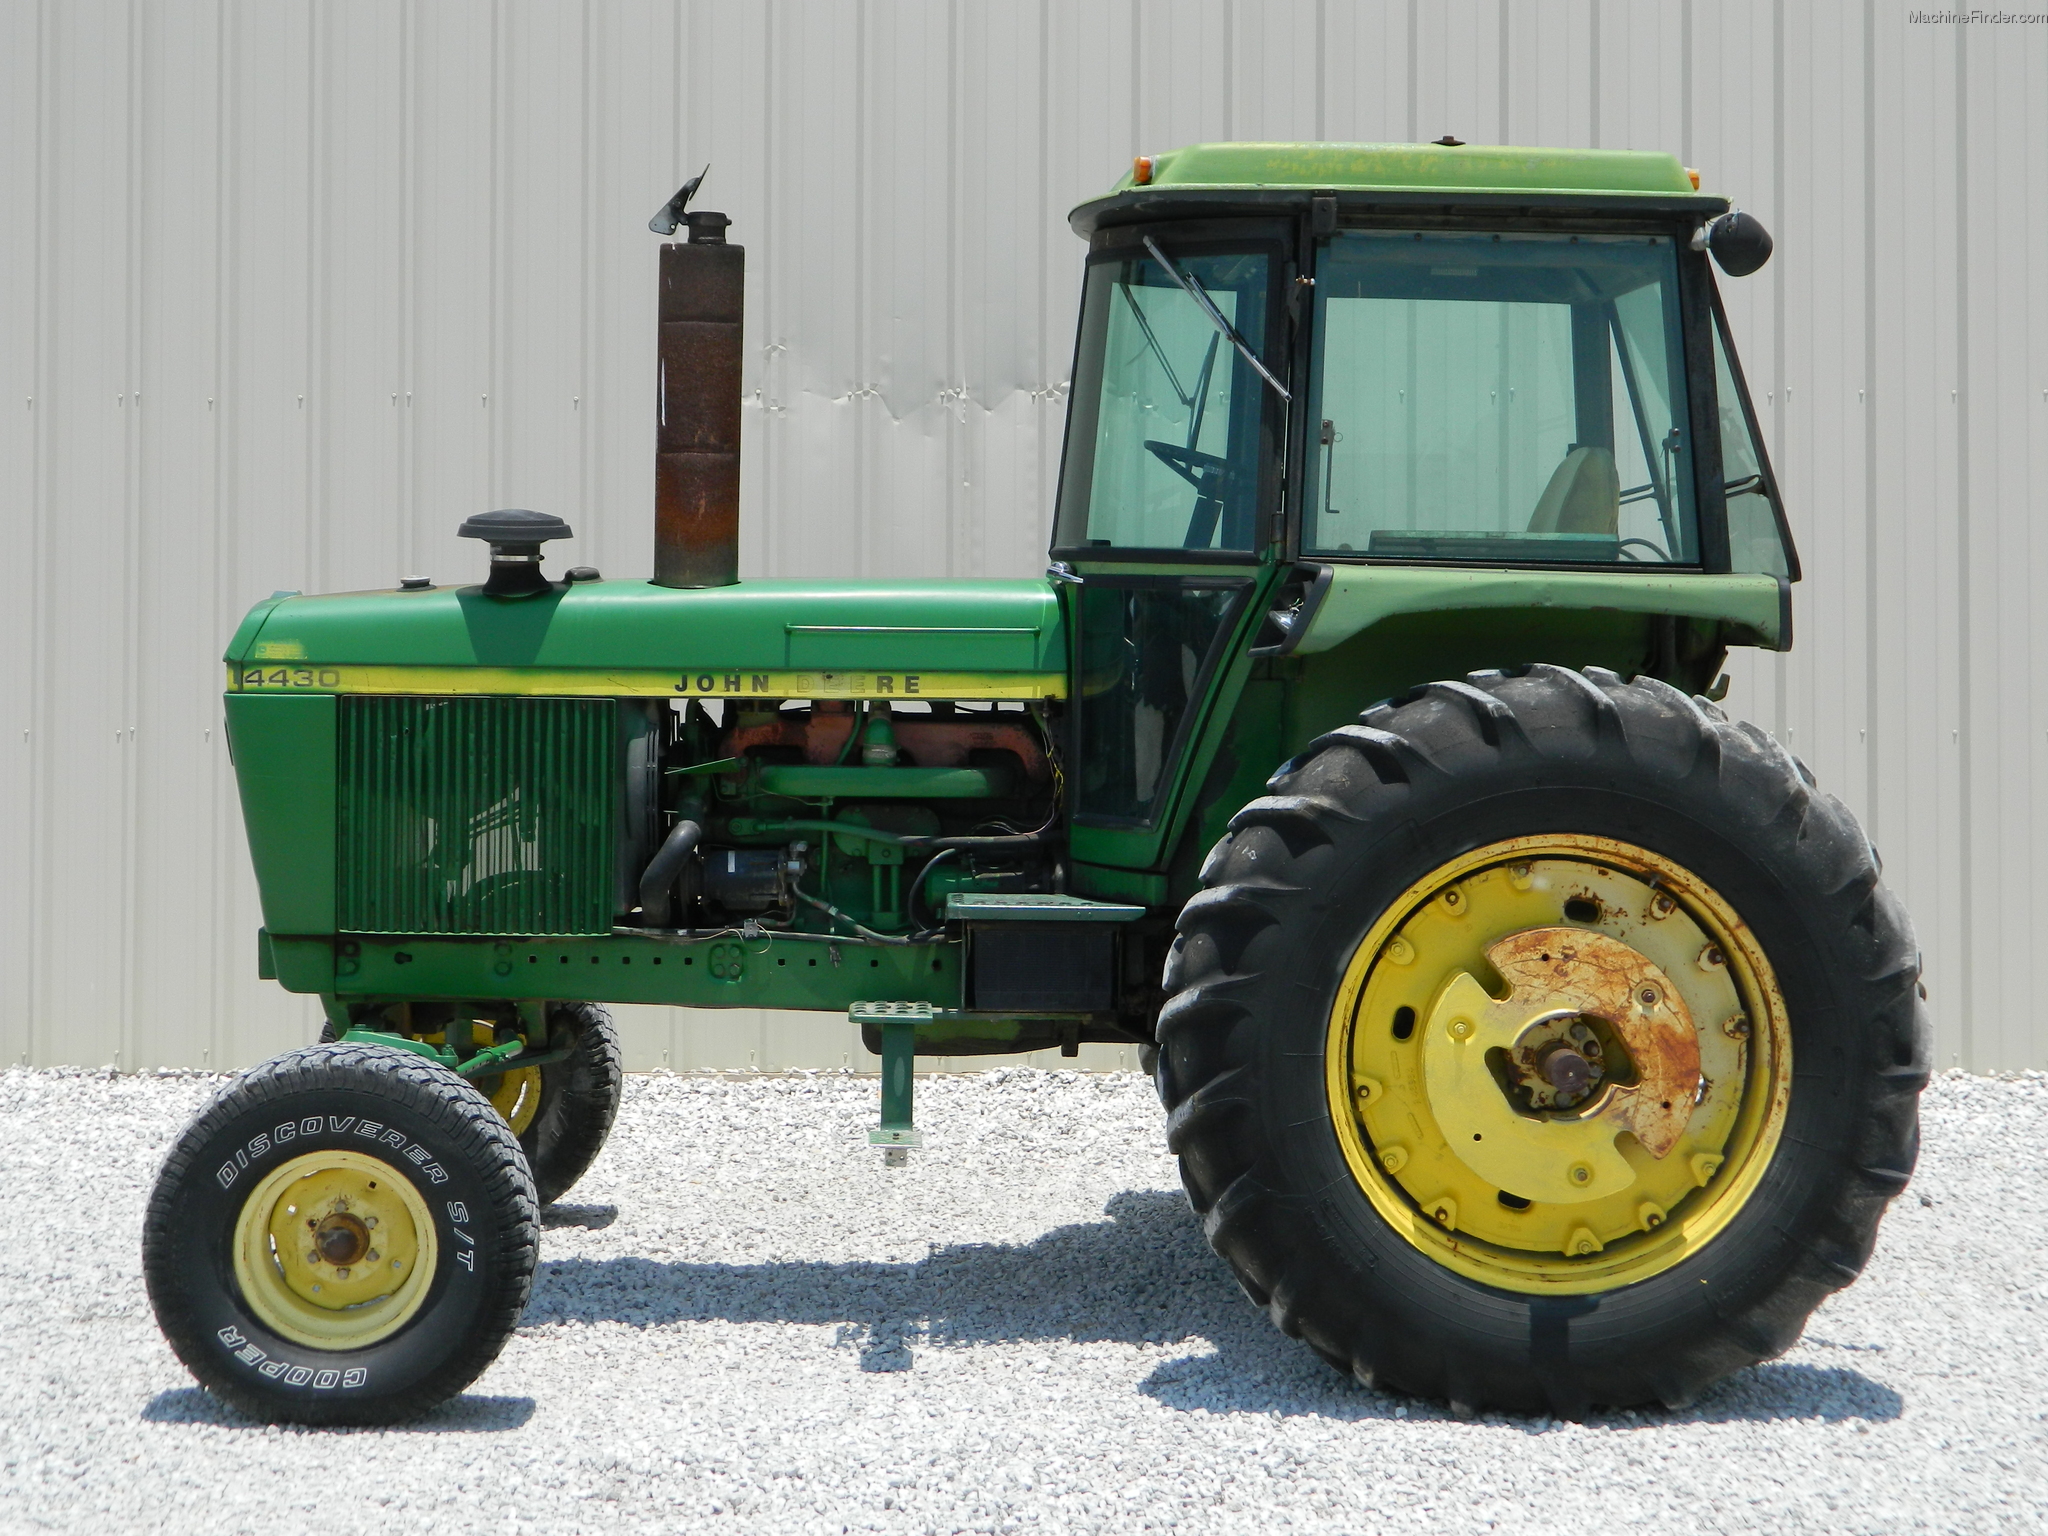 1975 John Deere 4430 Tractors Row Crop 100hp John Deere Machinefinder 0230